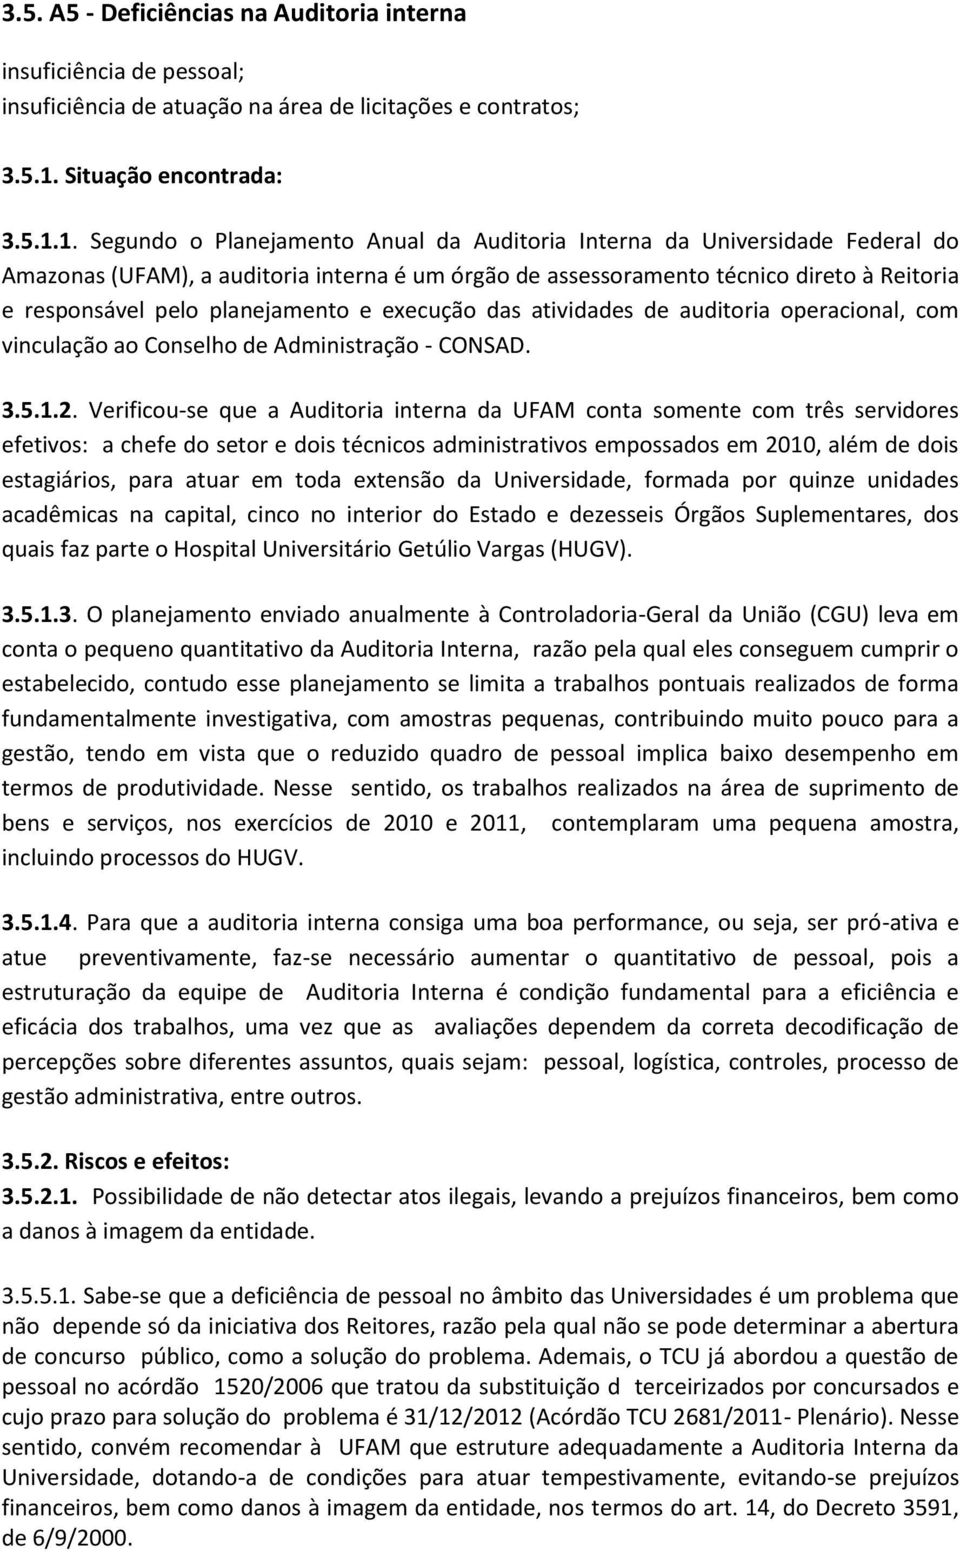 1. Segundo o Planejamento Anual da Auditoria Interna da Universidade Federal do Amazonas (UFAM), a auditoria interna é um órgão de assessoramento técnico direto à Reitoria e responsável pelo